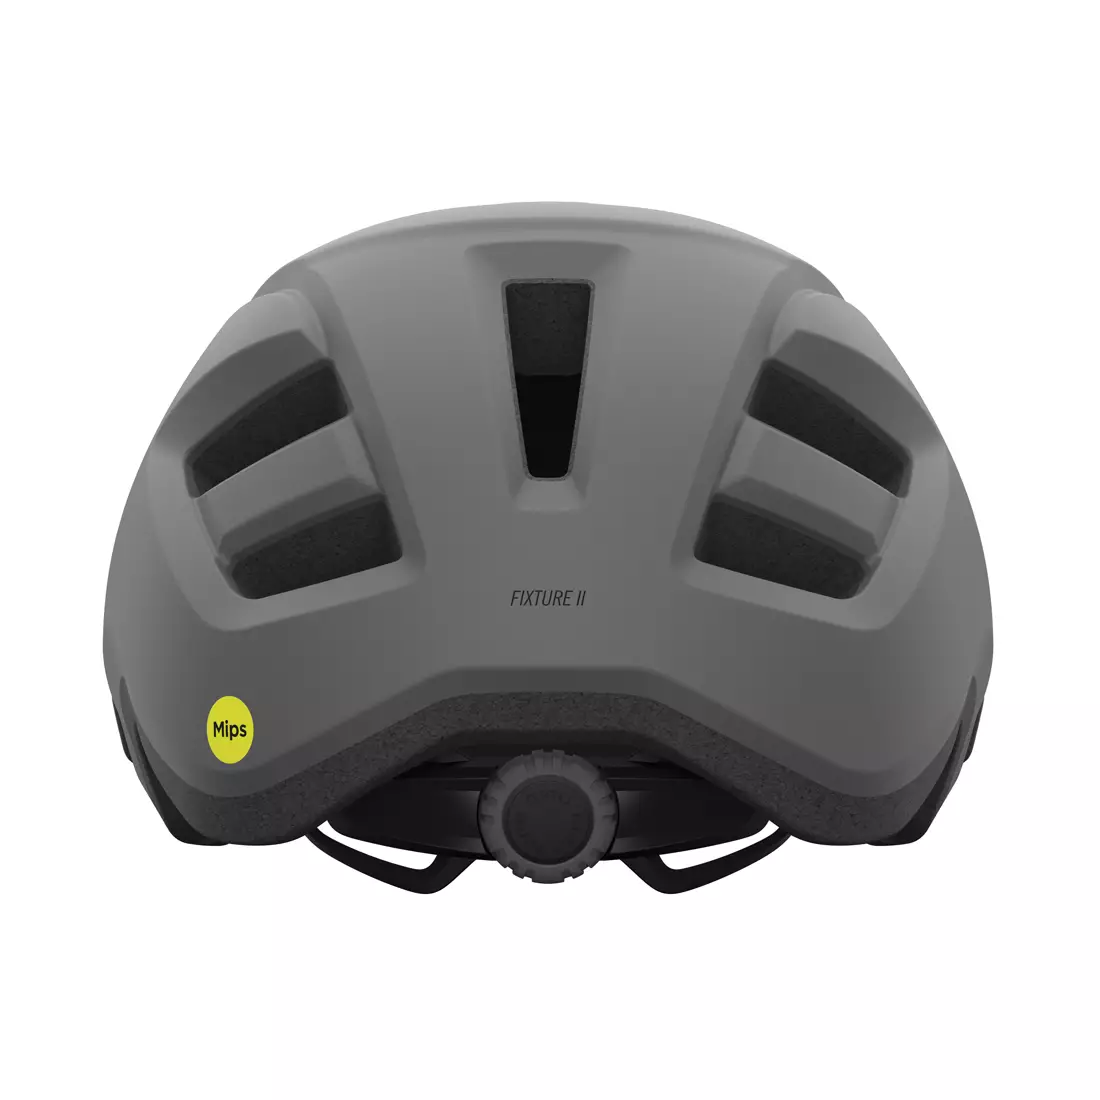 Giro Fixture II XL bicycle helmet -security and bike style